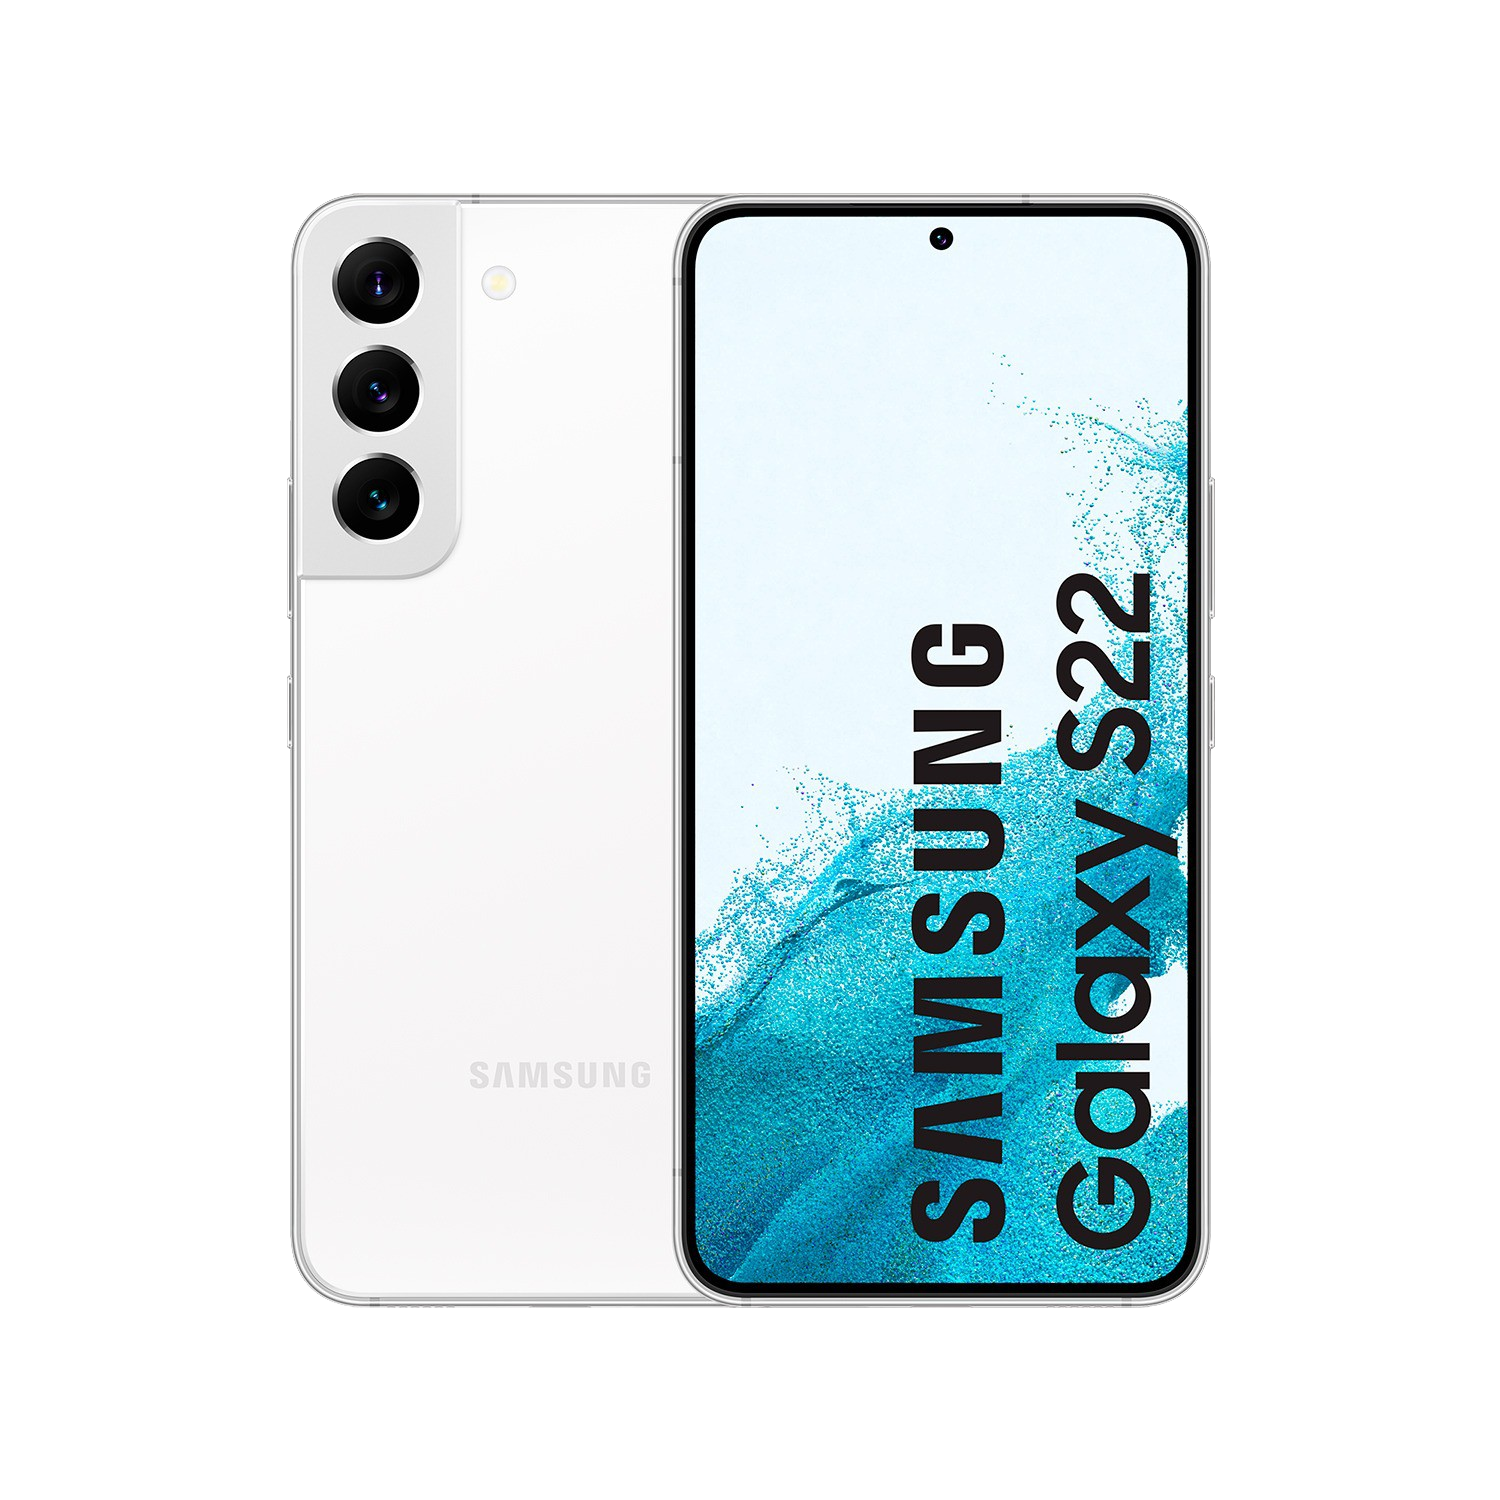 Smartphone Samsung Galaxy s22 5g 6.1 8 gb 128 blanco 8gb de ram 128gb white fhd+ 3700 mah android 12 exynos 2200 8gb128gb sms901 5gsamsung 61 8128gb 120hz 50121010mpx 1549 61“ 8128